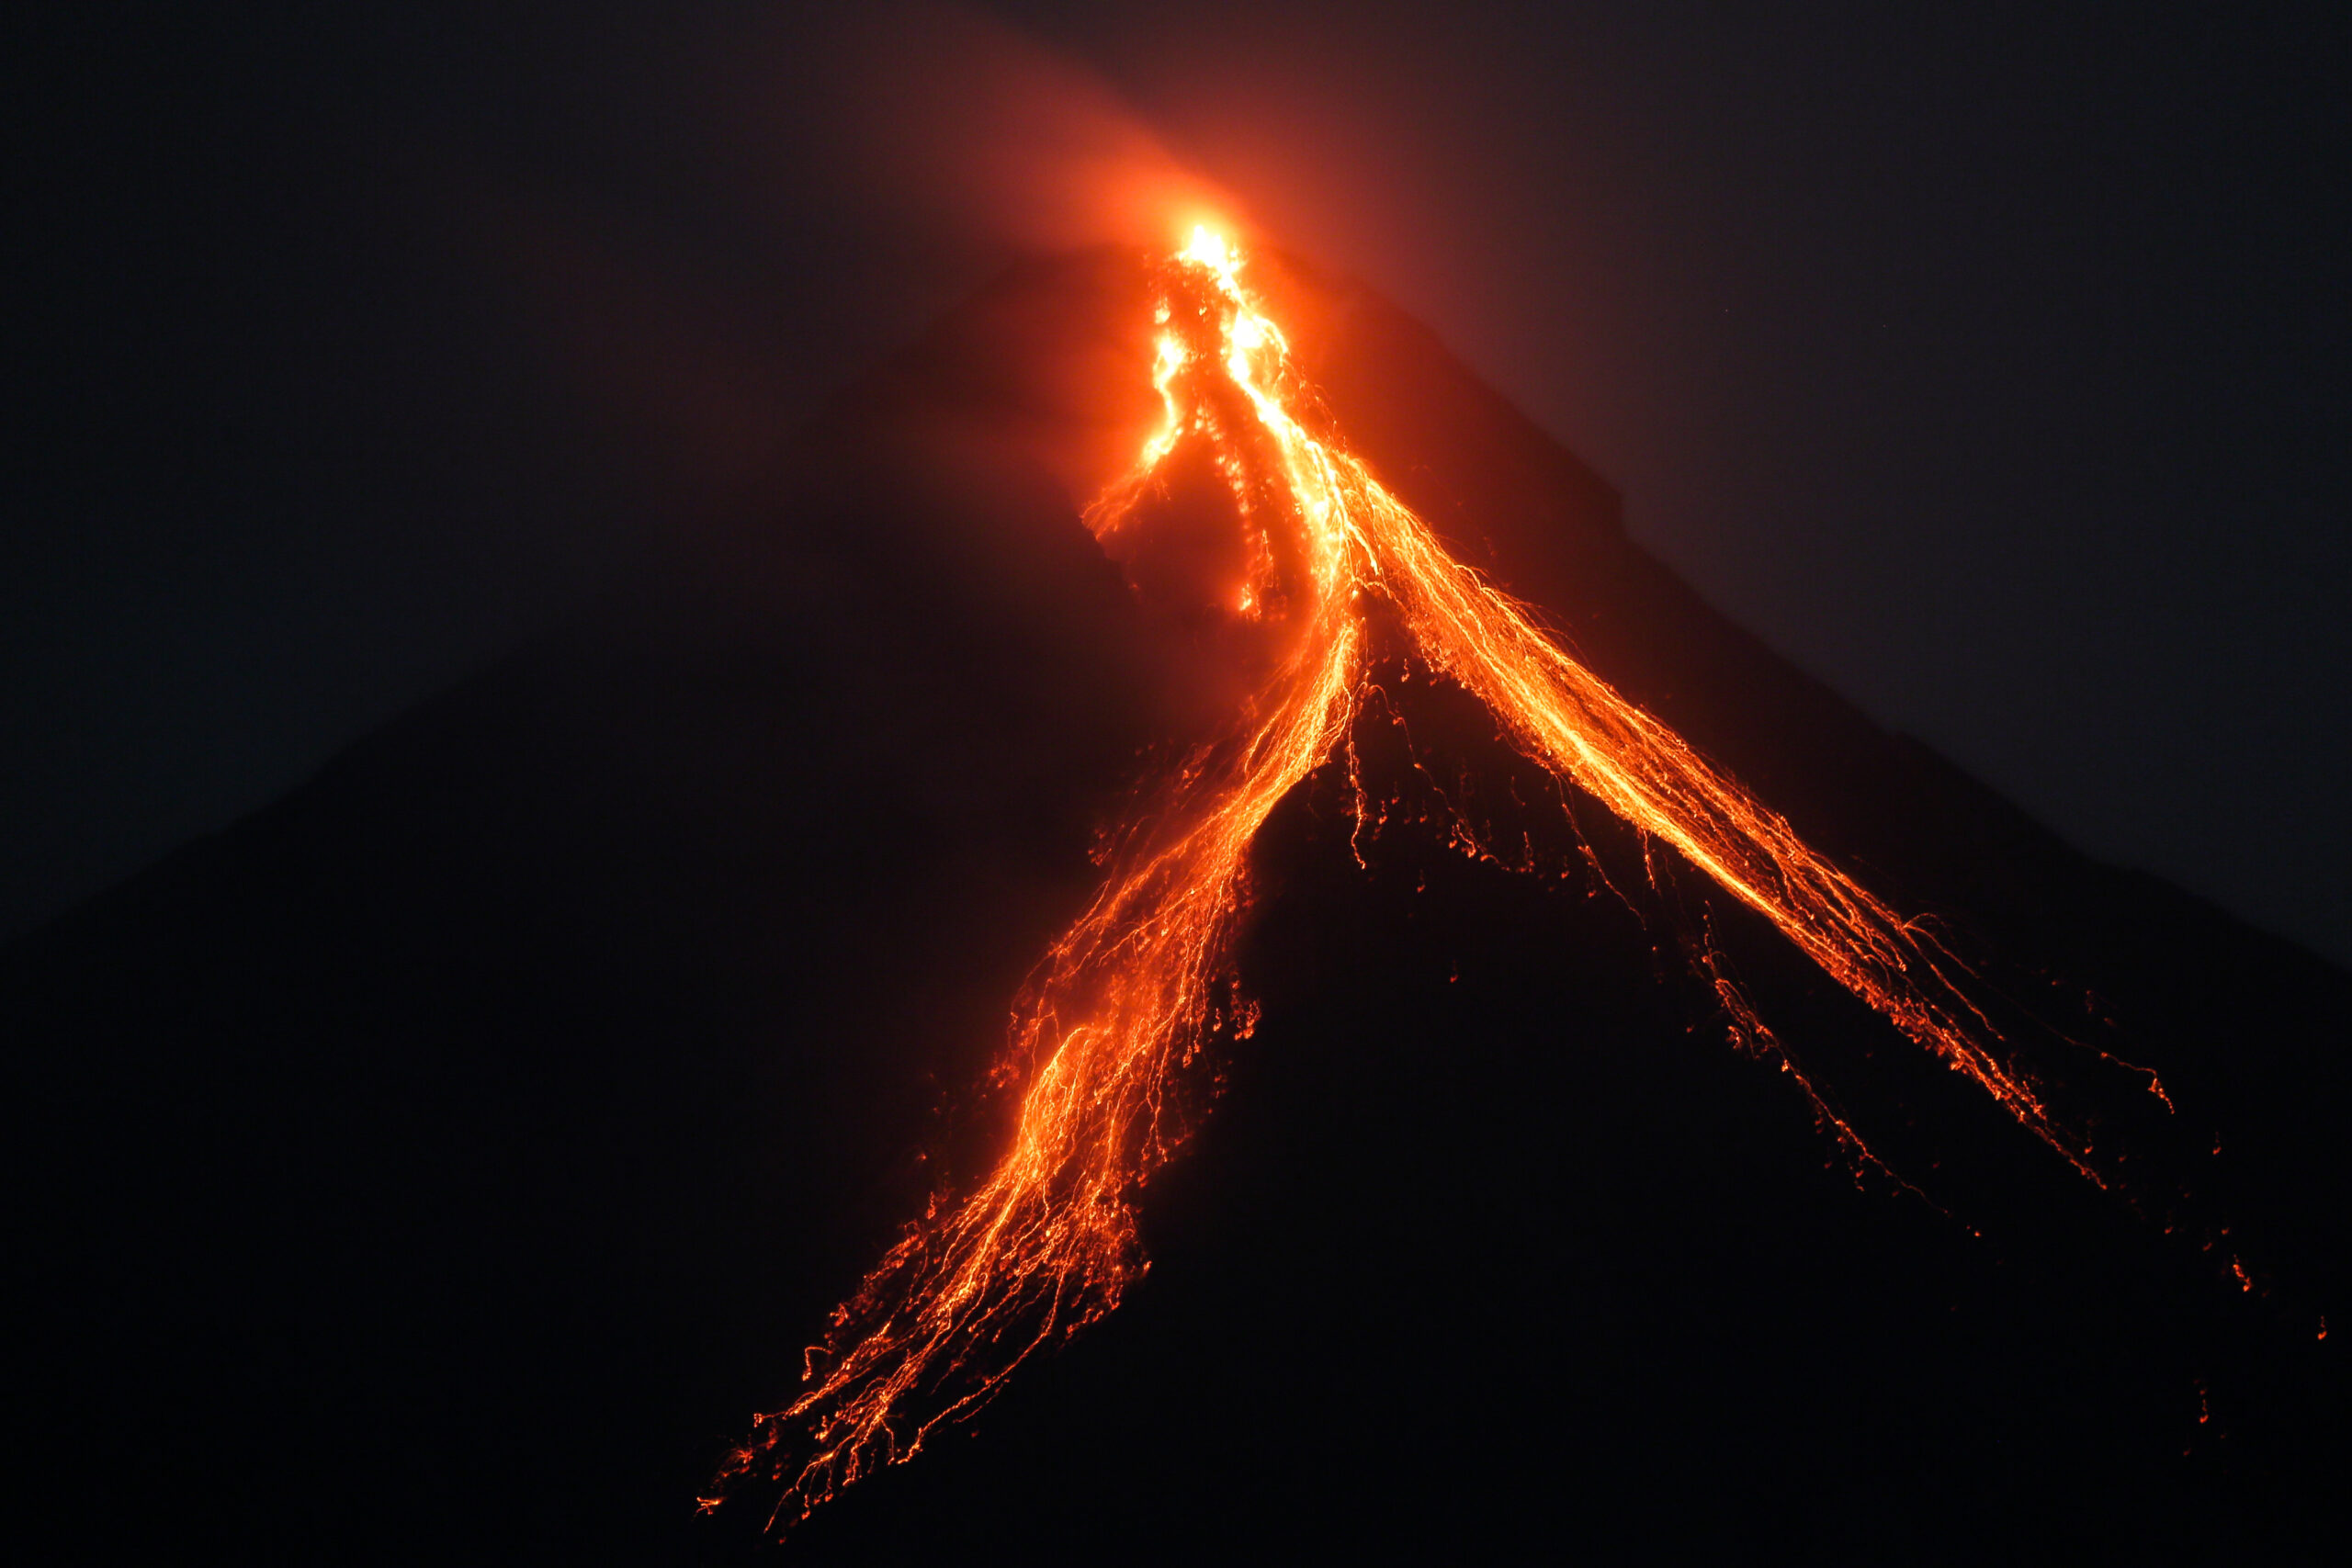 mayon volcano eruption may 7 2022